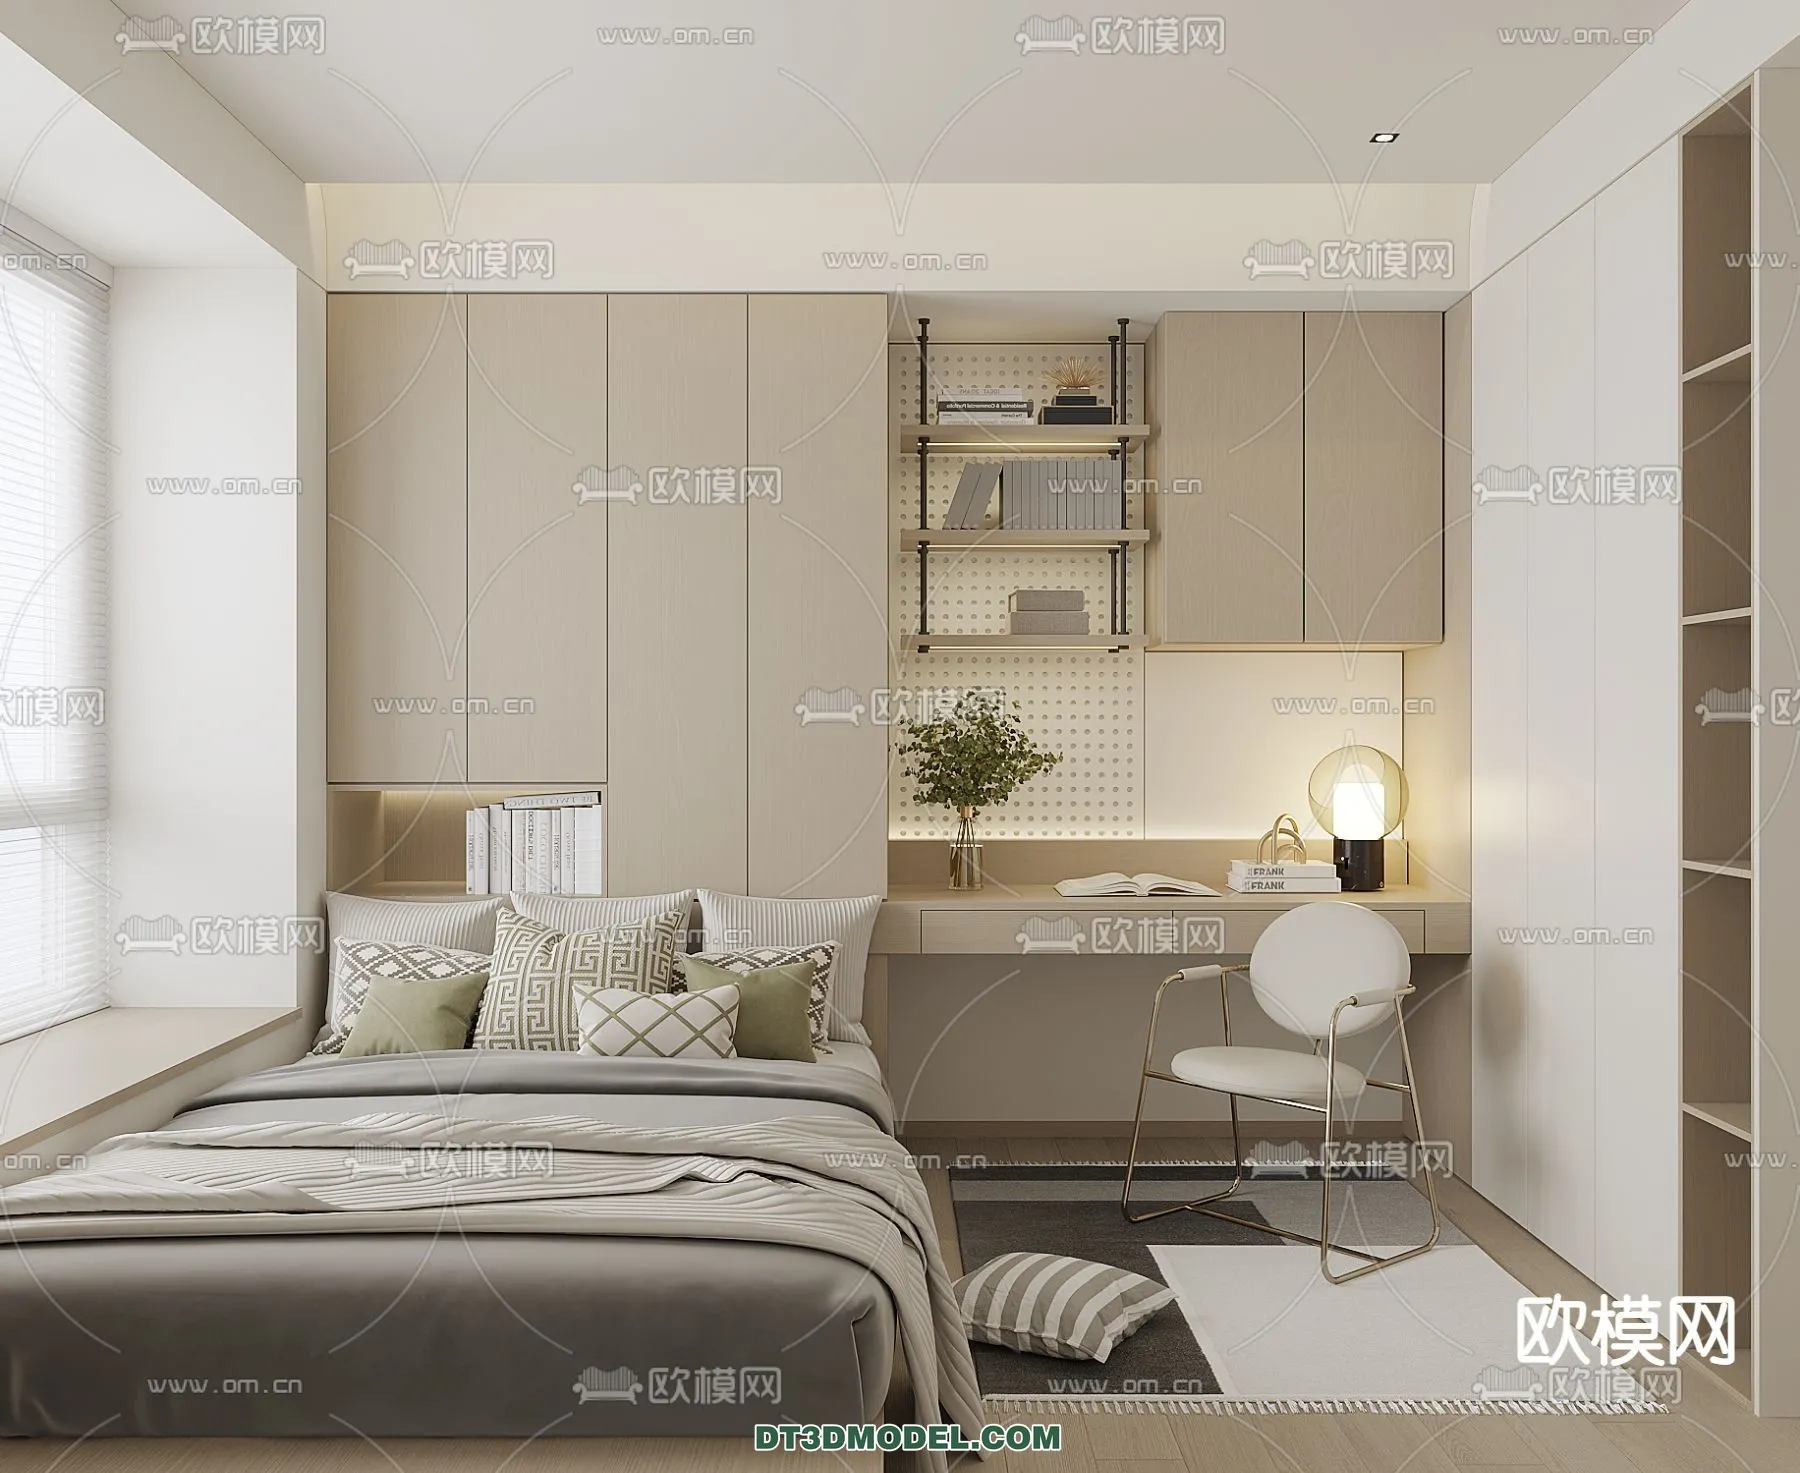 Tatami Bedroom – Japan Bedroom – 3D Scene – 086